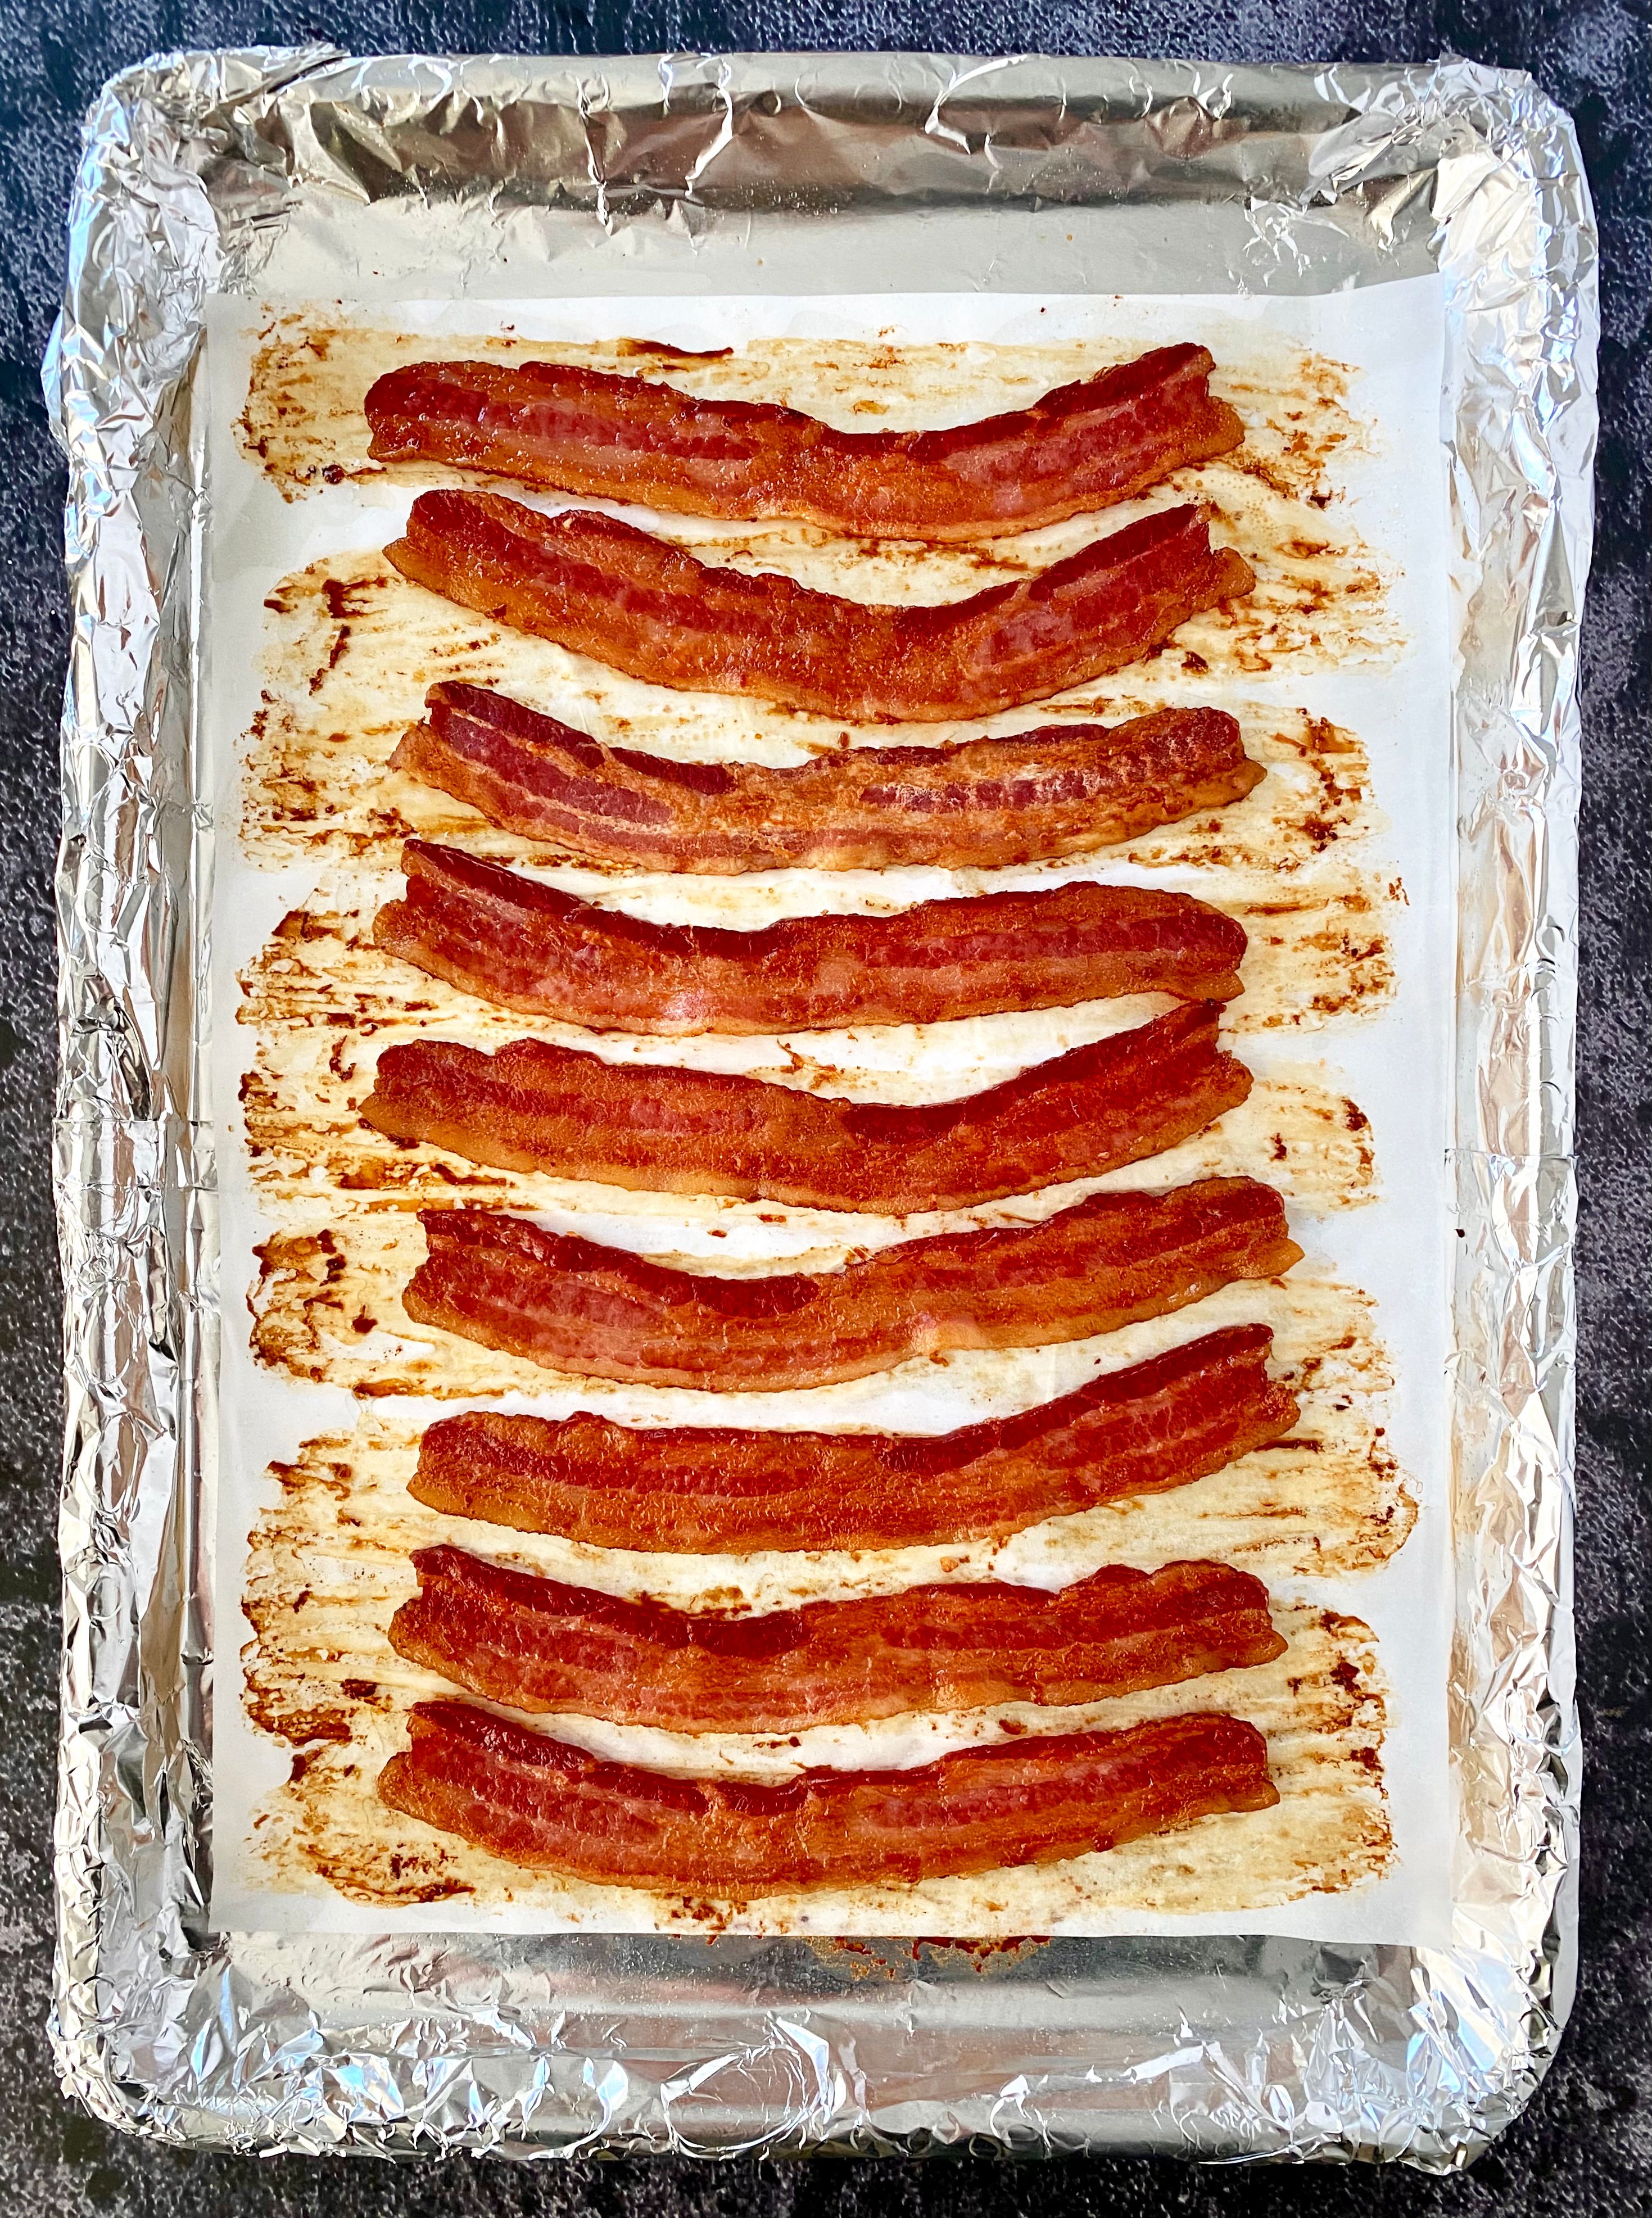 20 Best Bacon Fat Recipes - BENSA Bacon Lovers Society